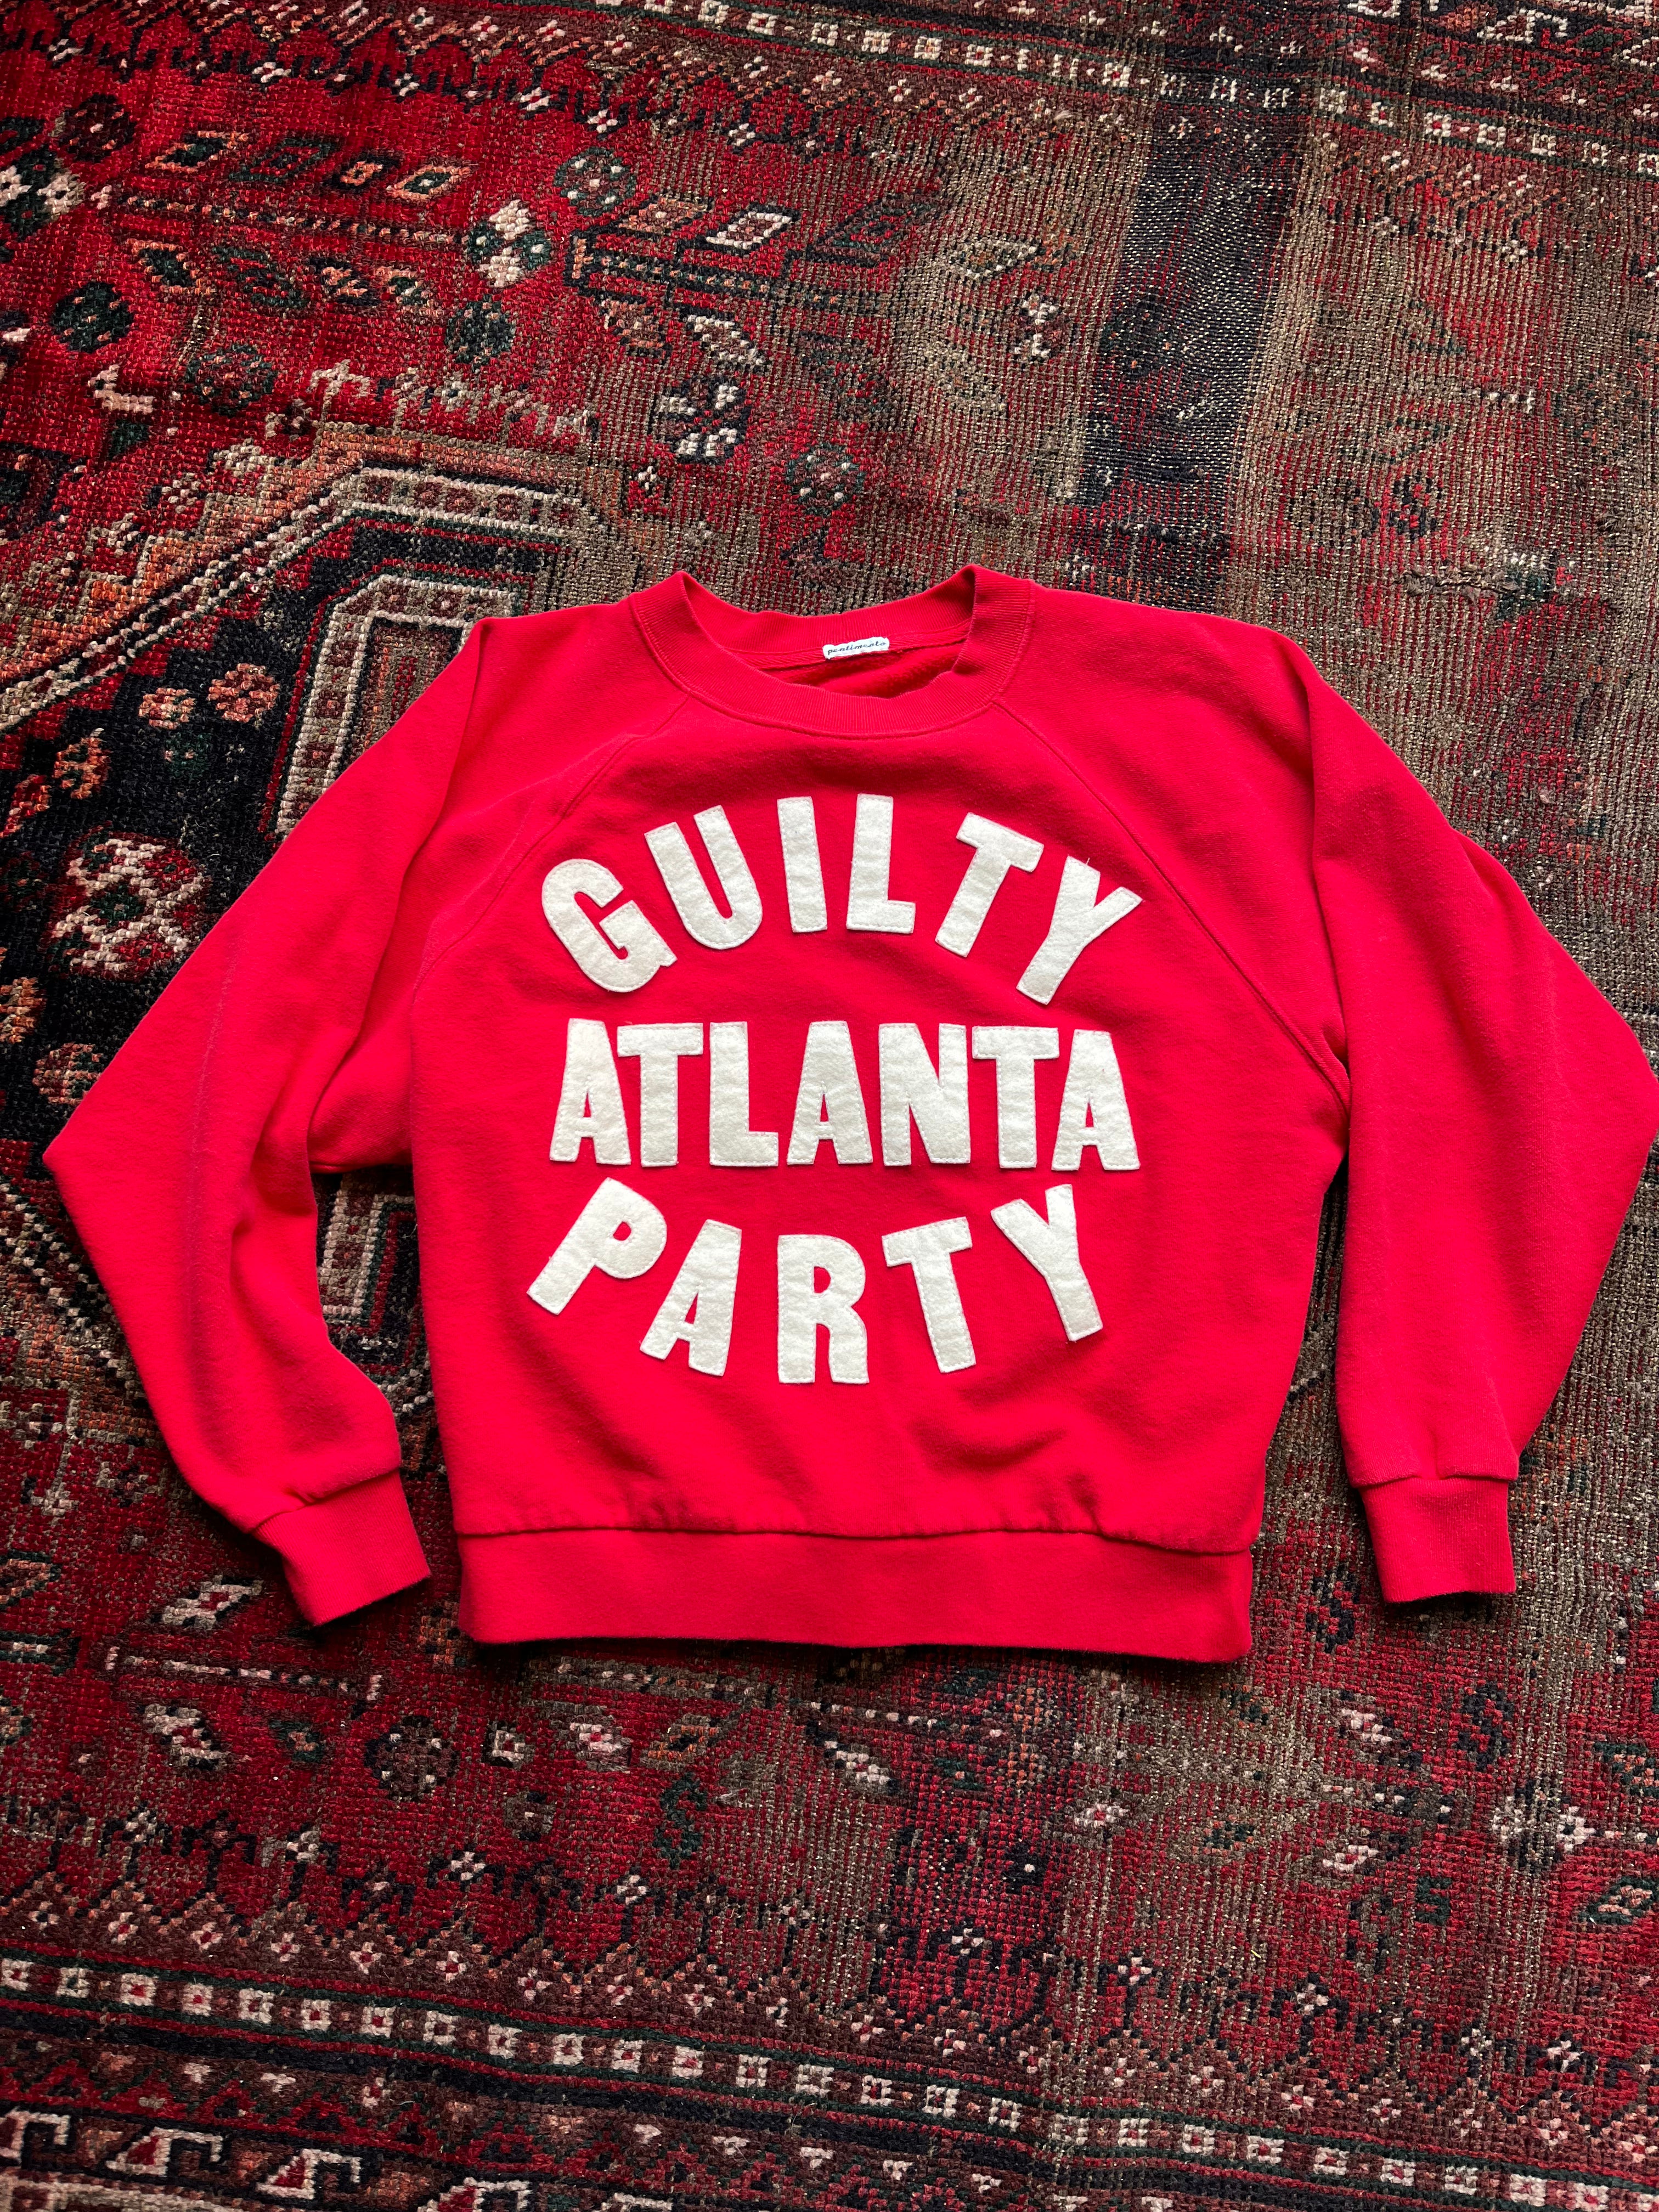 GP Sweatshirt - Guilty Party